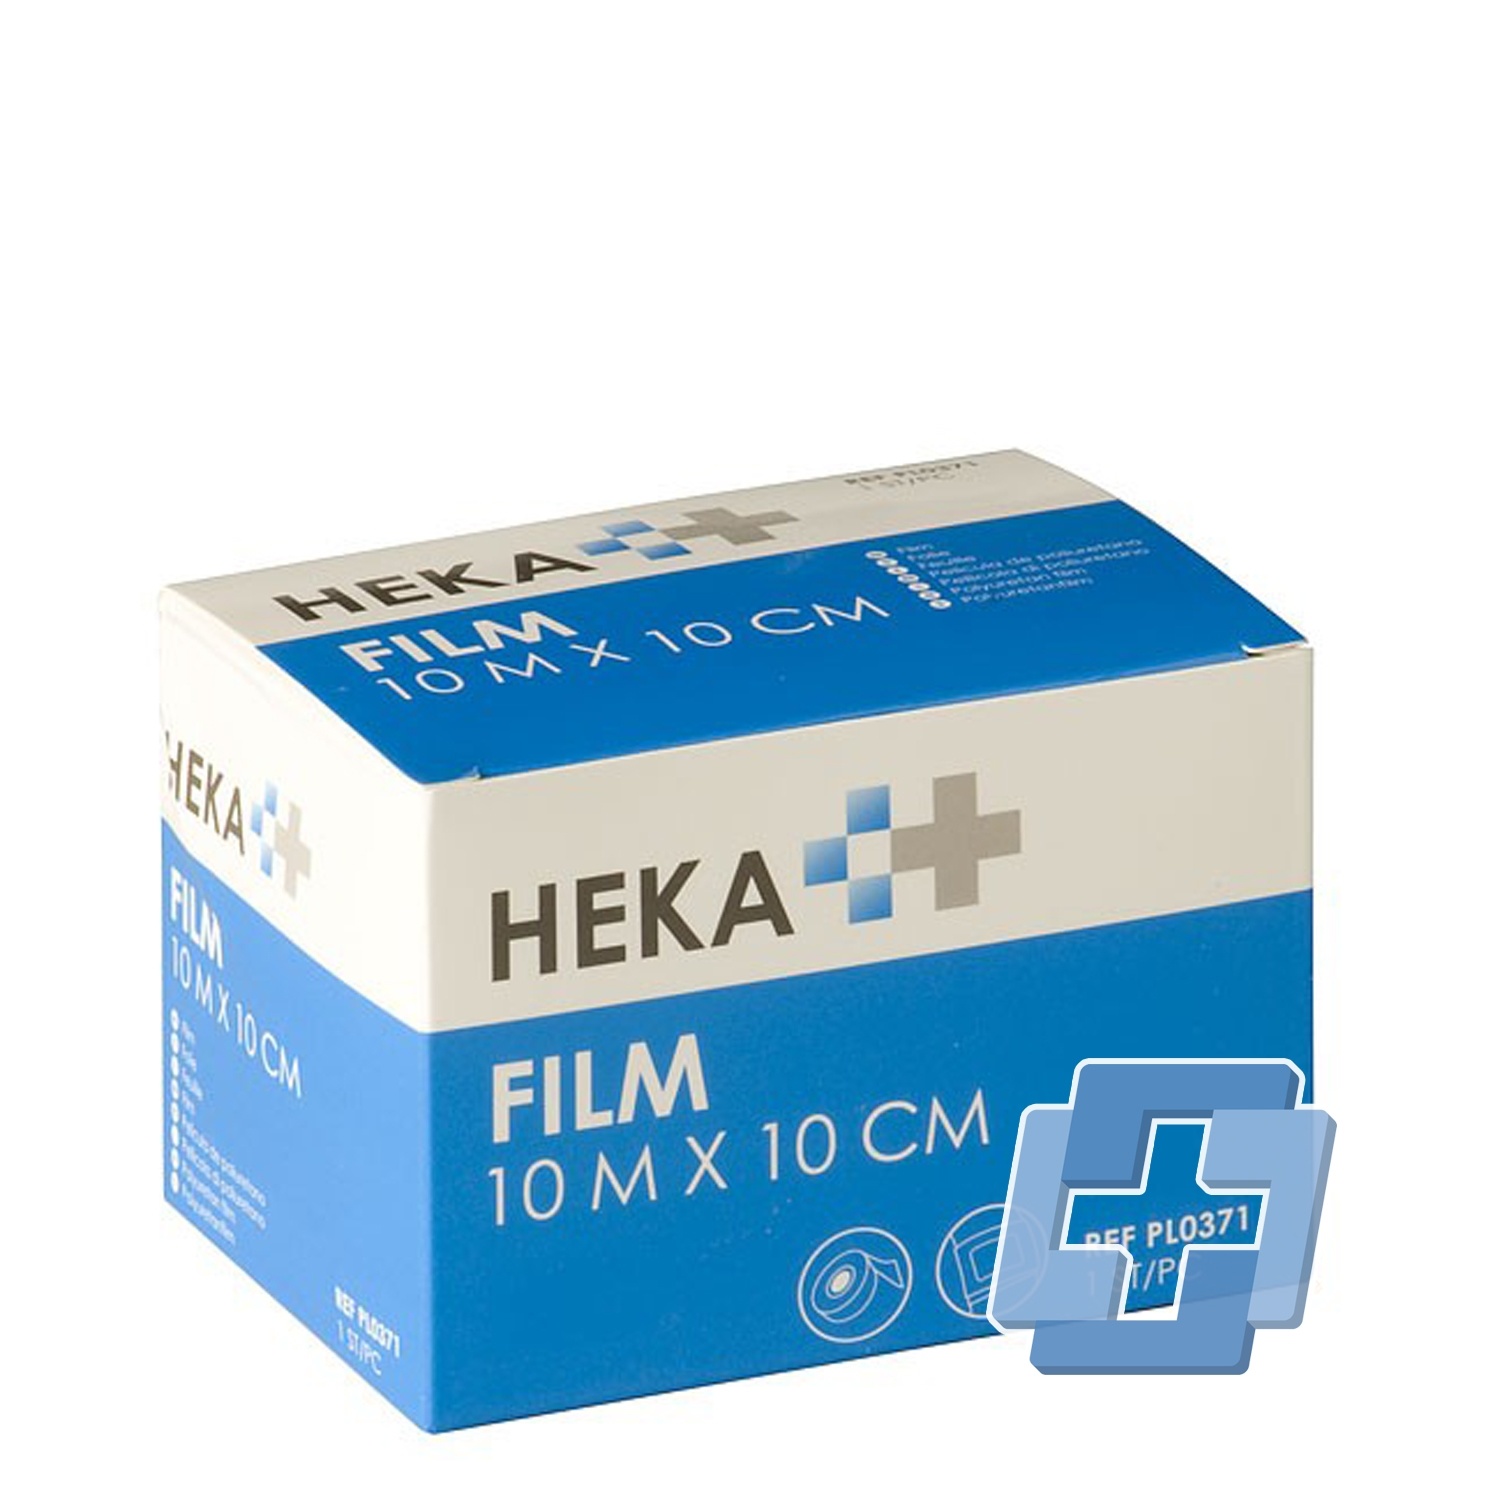 HEKA Filmrolle nicht steril - 10 m x 10 cm